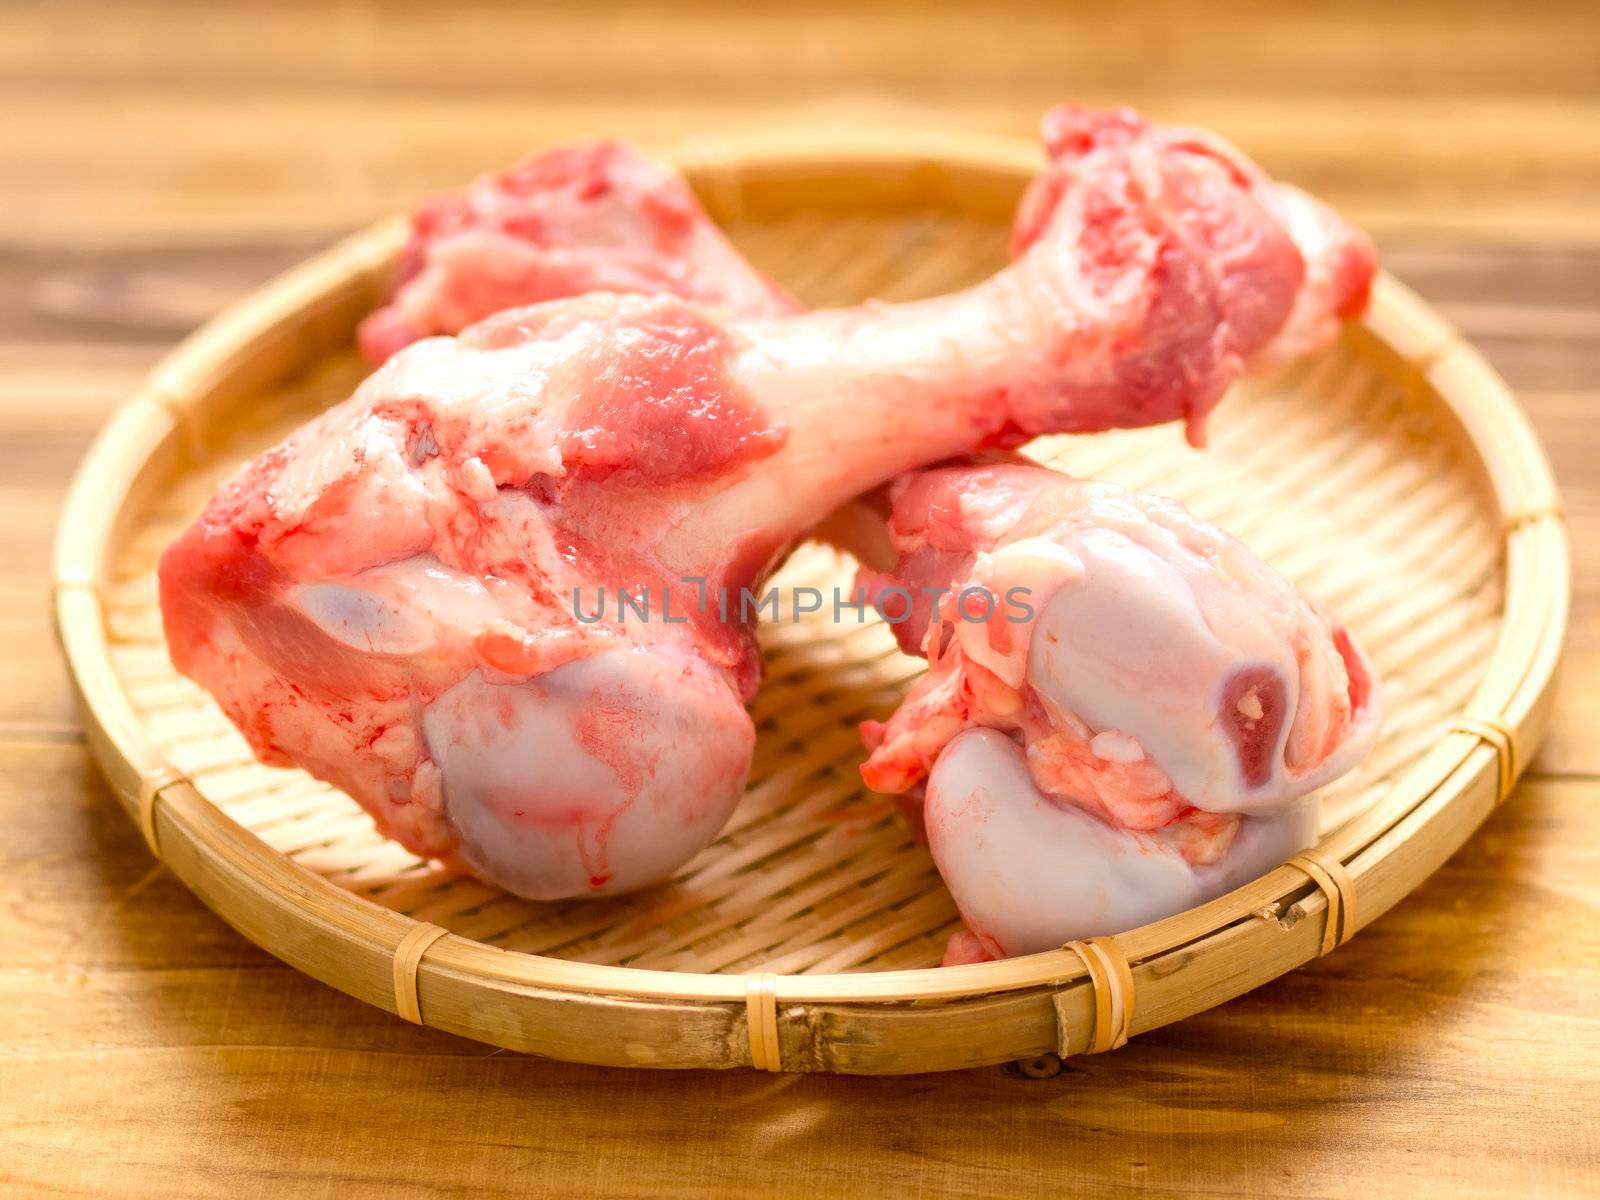 close up of pork bones in basket